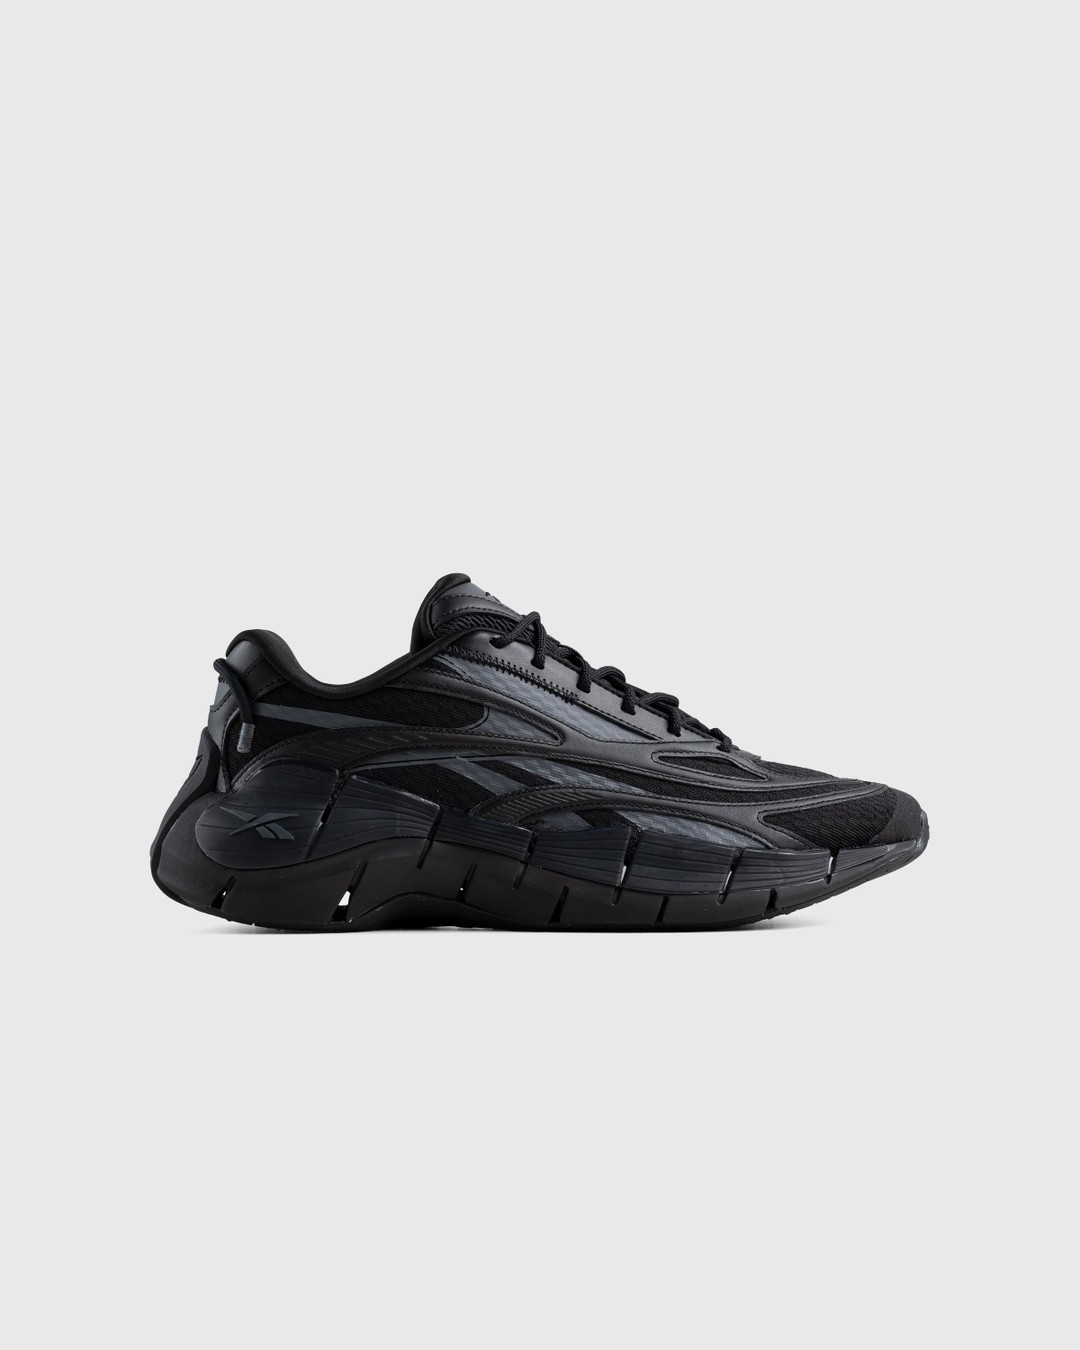 Reebok – Zig Kinetica 2.5 Black - Low Top Sneakers - Black - Image 1